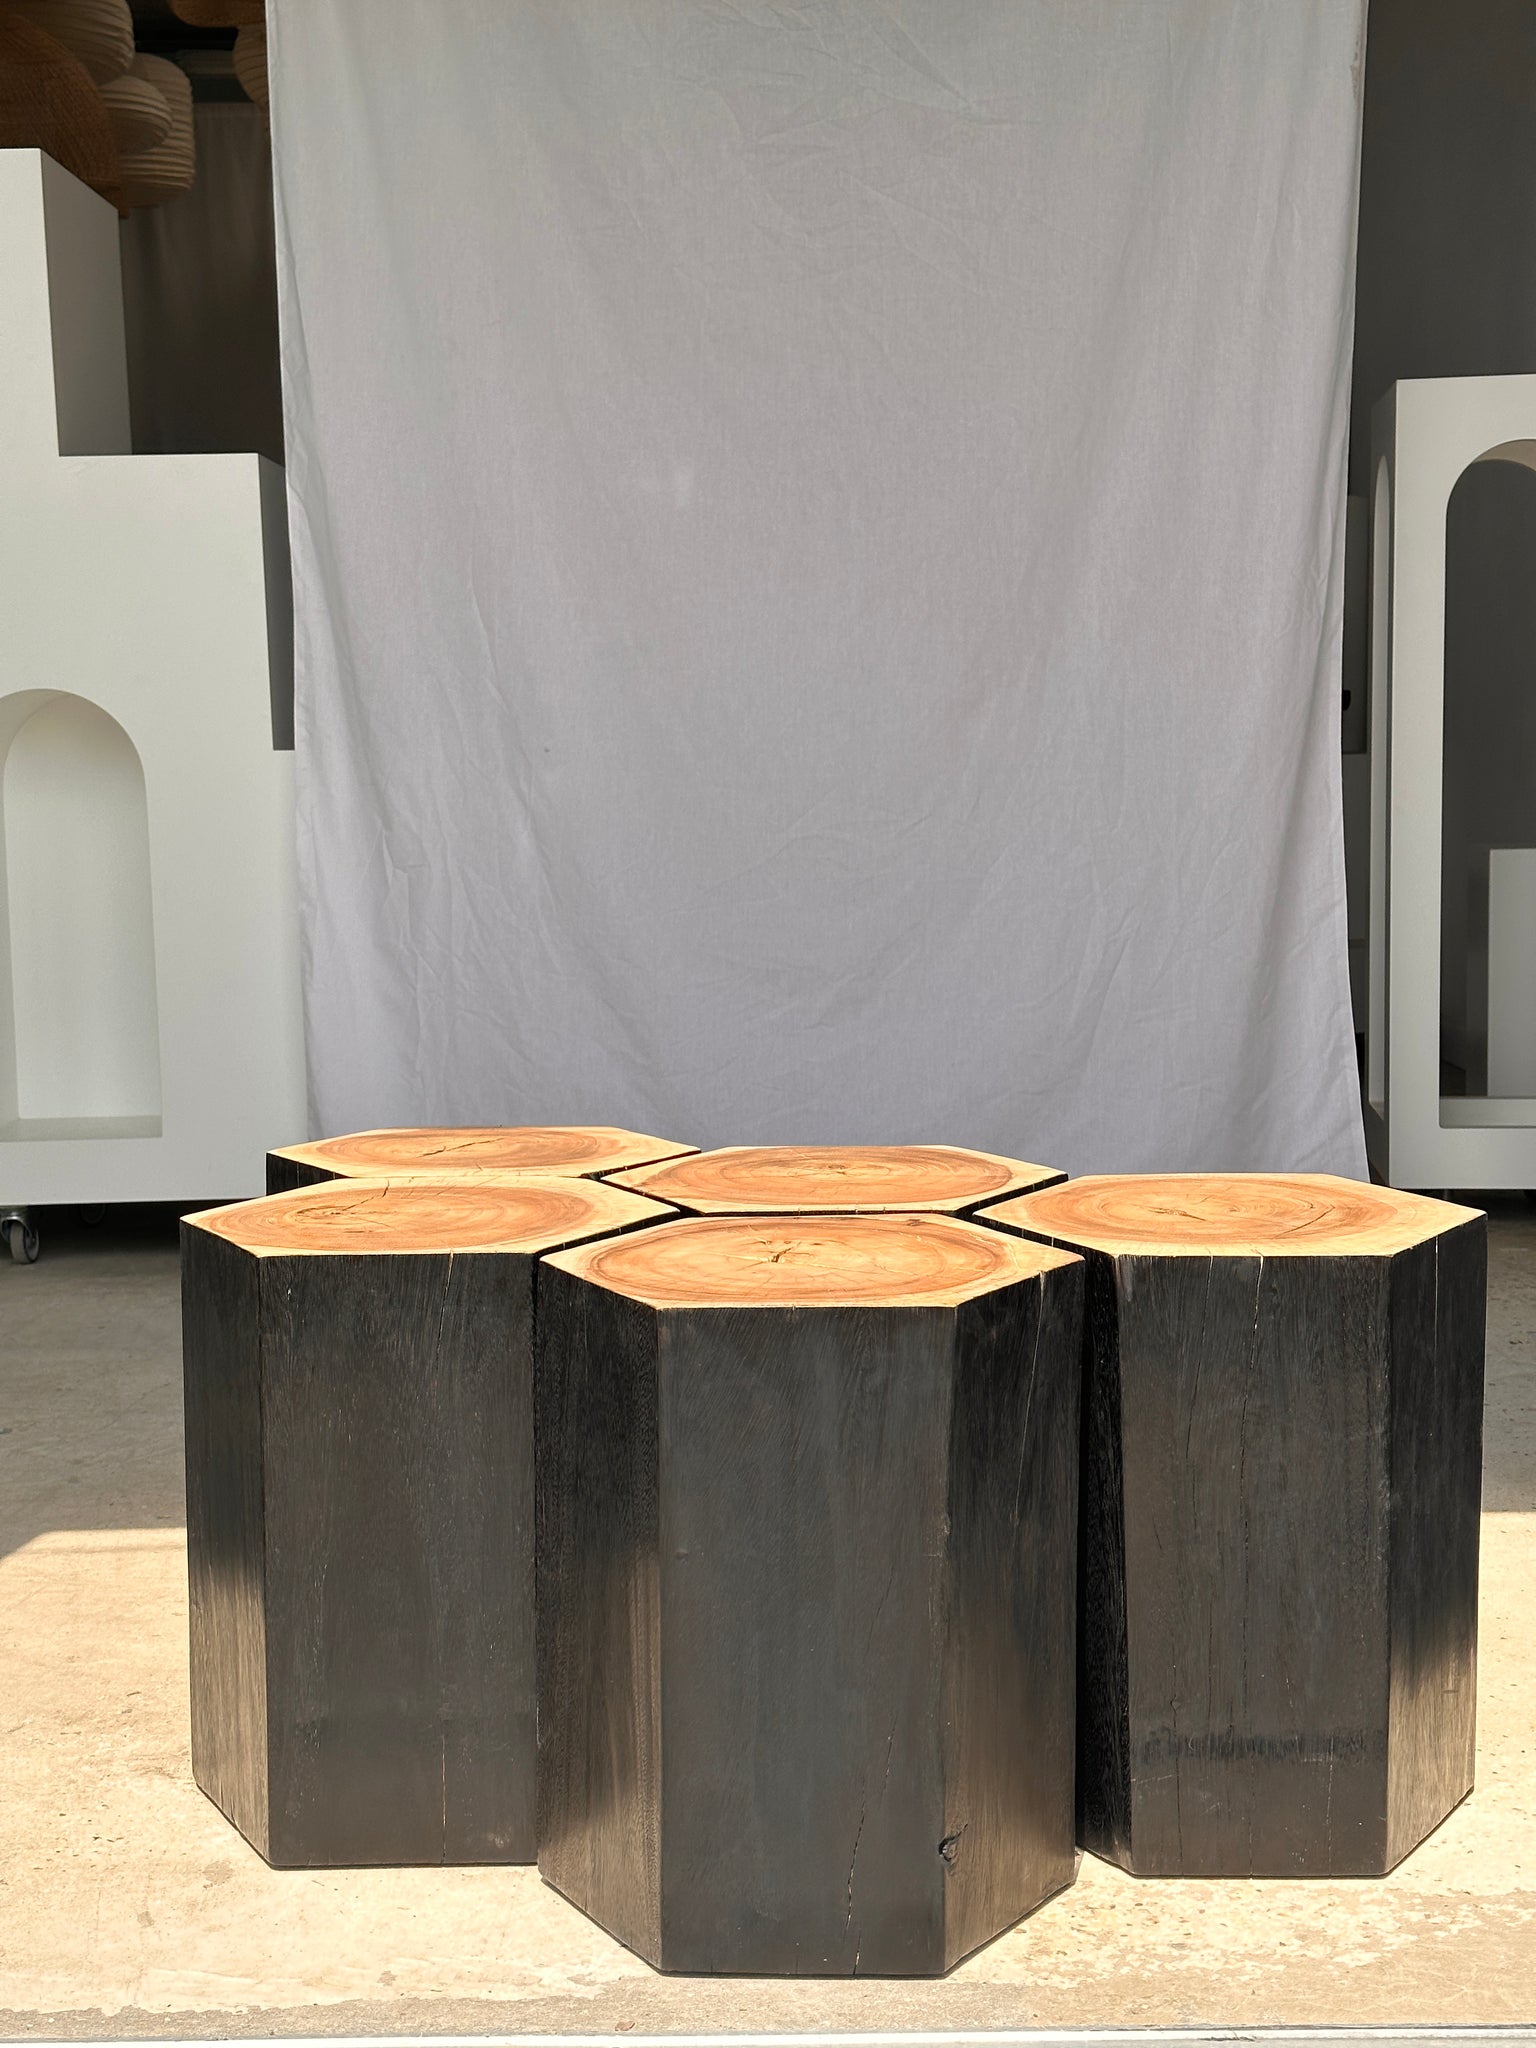 Ensemble de 5 stools hexagonaux en suar bicolore formant mobilier d'appoint modulaire (table basse / assise)